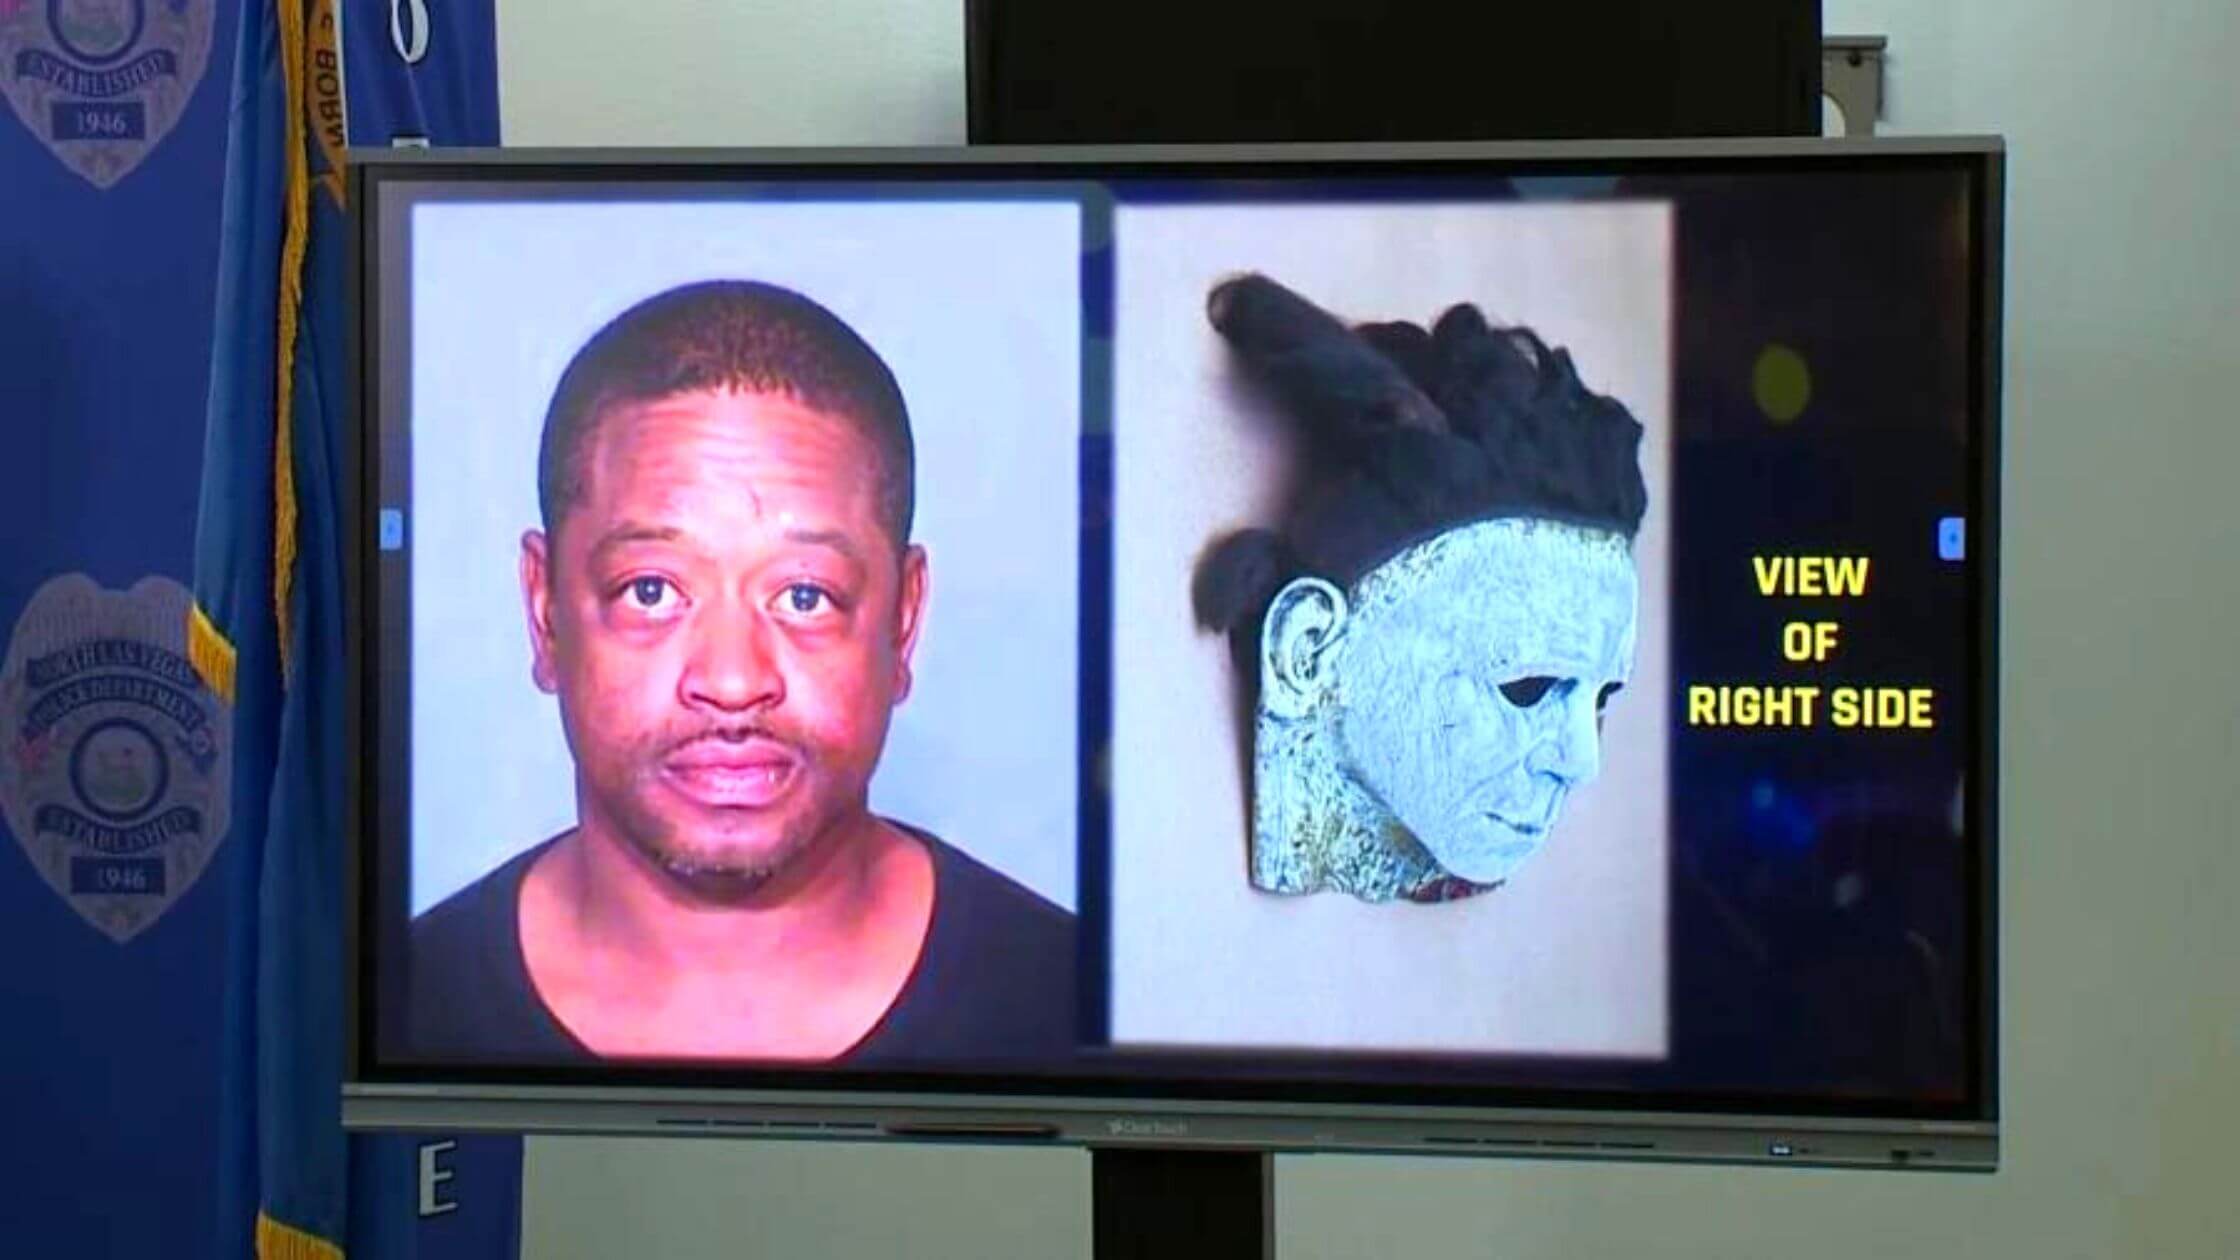 La policía de Nevada disparó al hombre que llevaba una máscara al estilo de "Michael Myers